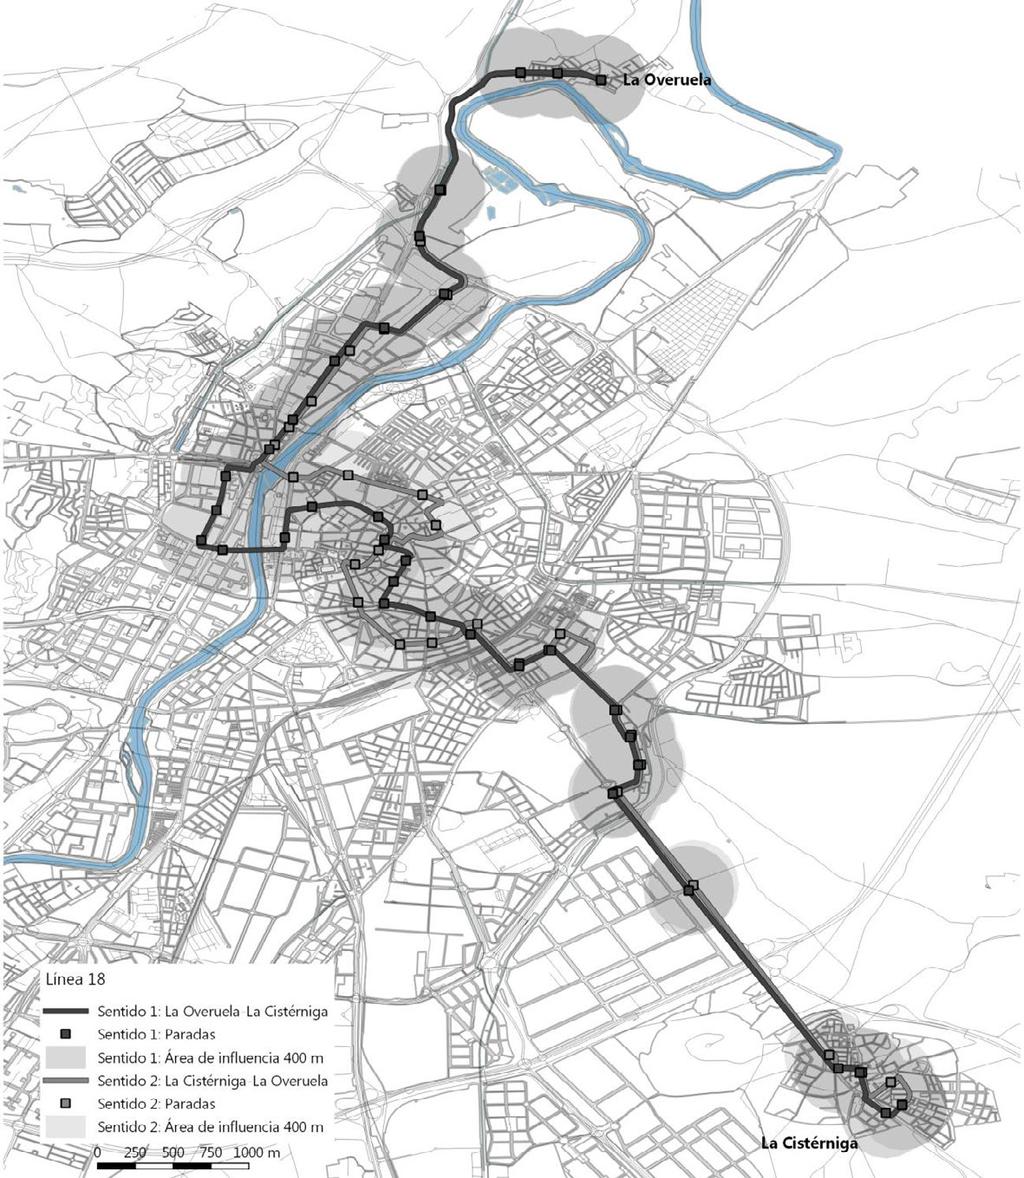 Línea 18: La Overuela-La Cistérniga Plan de implantación de una línea de tranvía en Valladolid Características de la línea Demanda (2012) Longitud sentido 1 (m) 16.